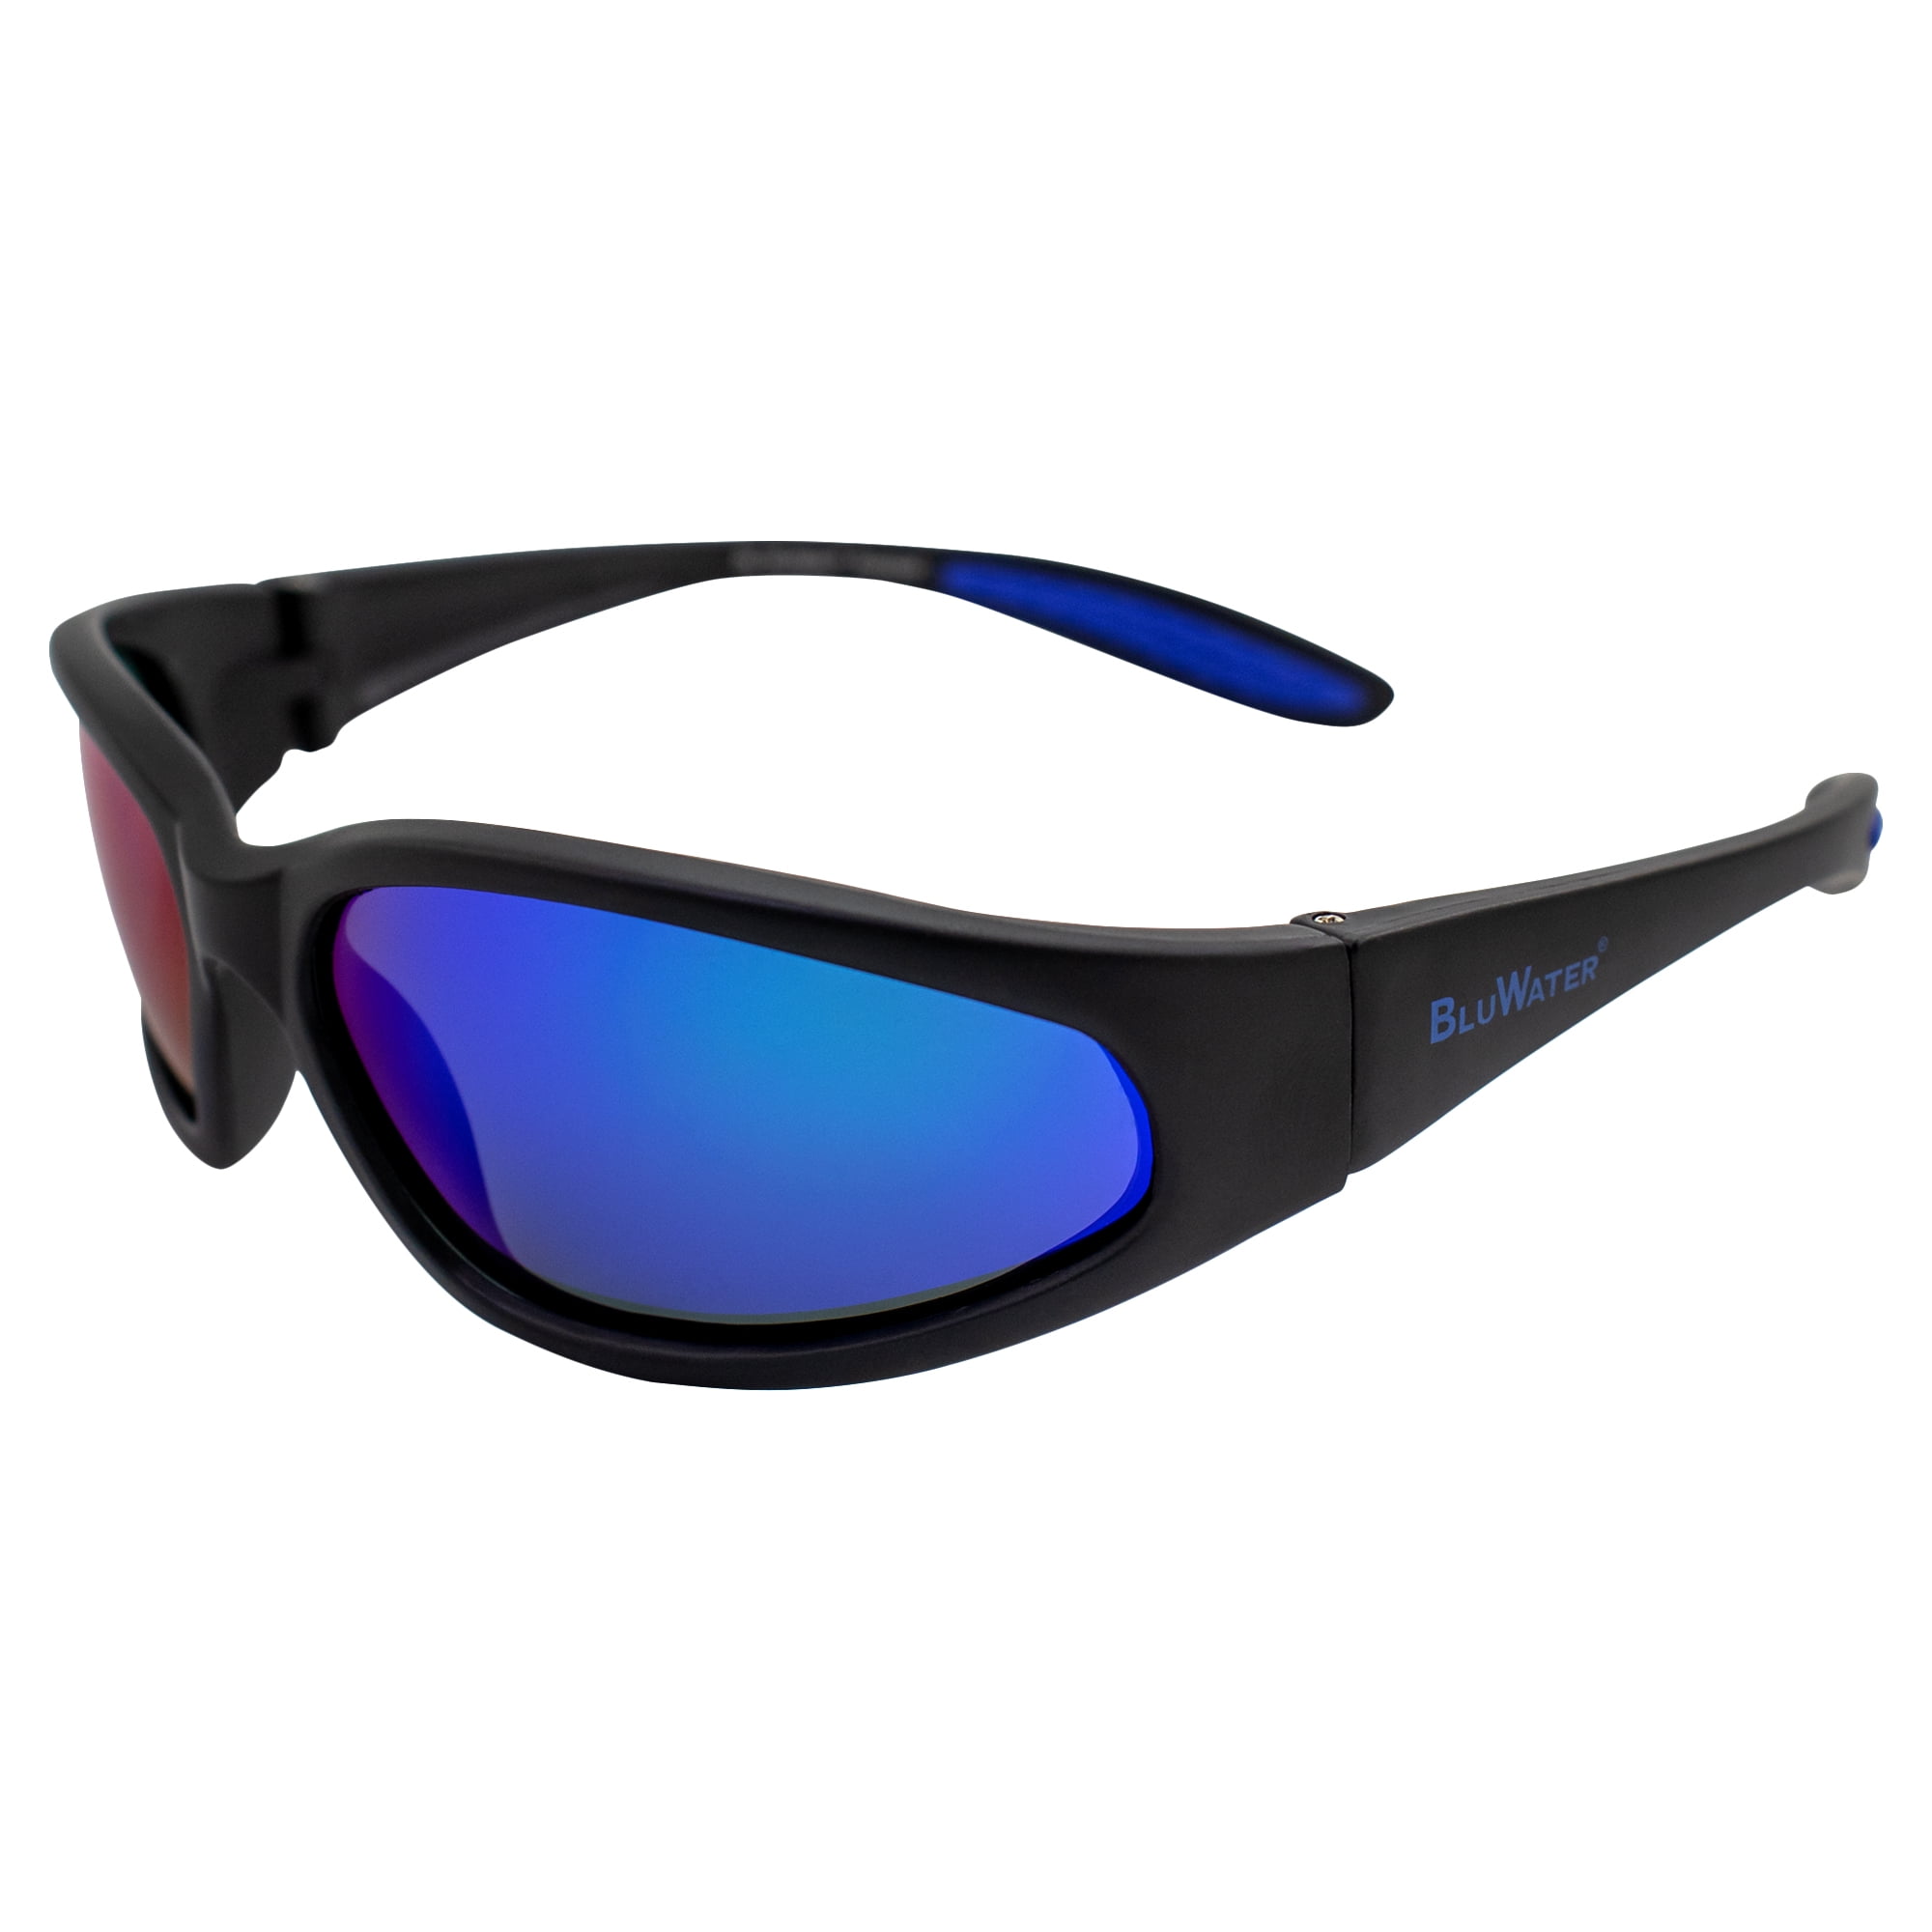 BluWater Samson 2 G-Tech Marine Lens Polarized Sunglasses for Men